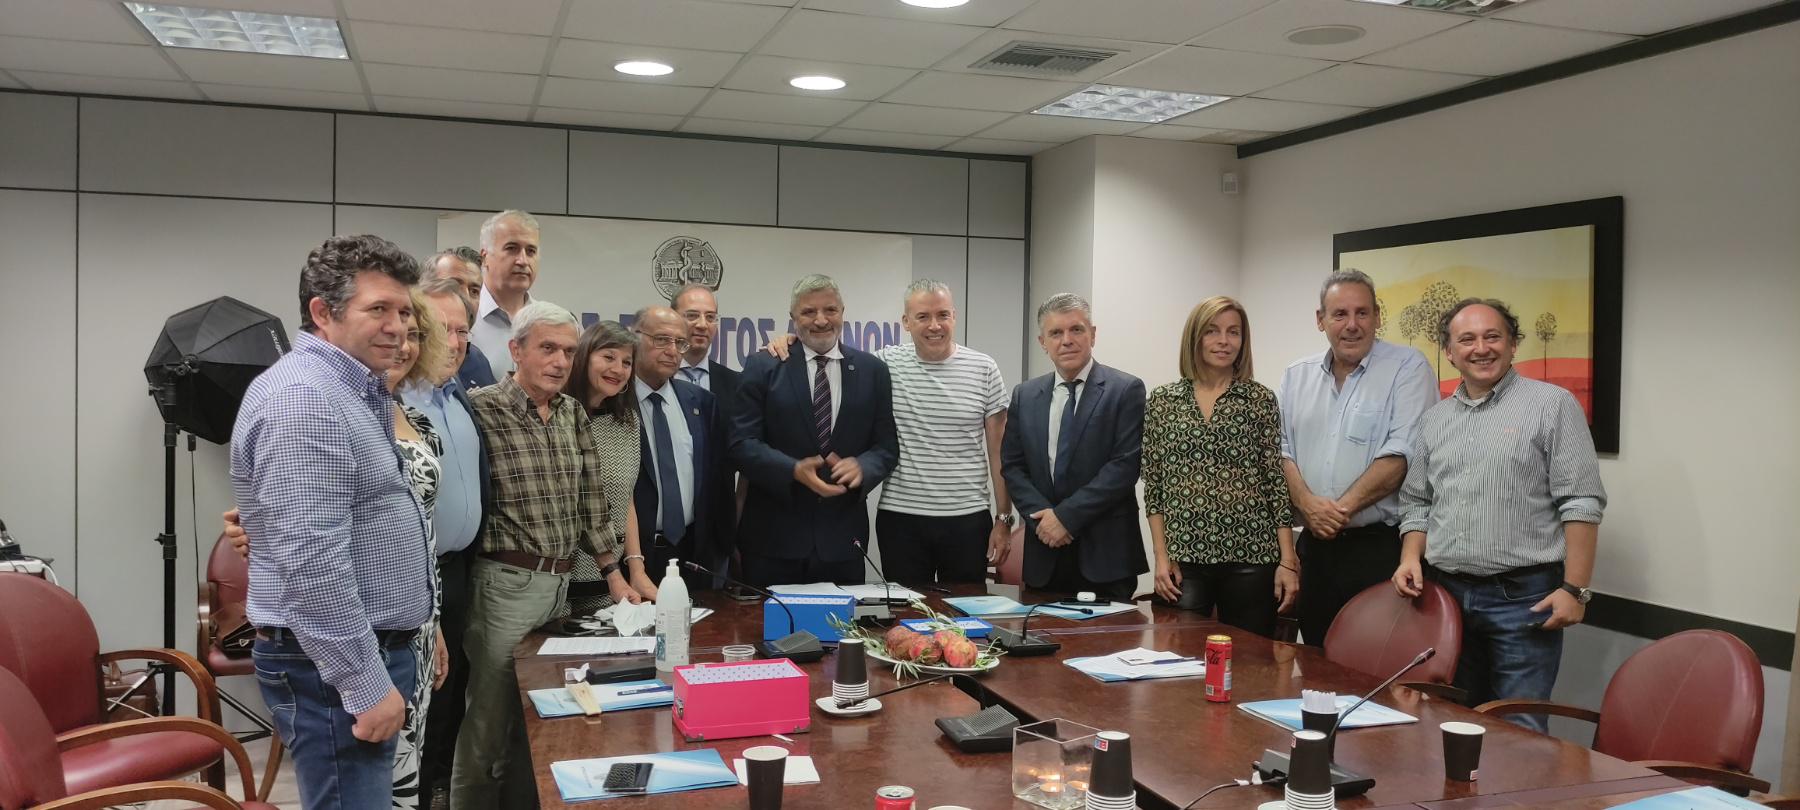 Ιατρικός Σύλλογος Αθηνών: Συγκροτήθηκε το νέο διοικητικό συμβούλιο